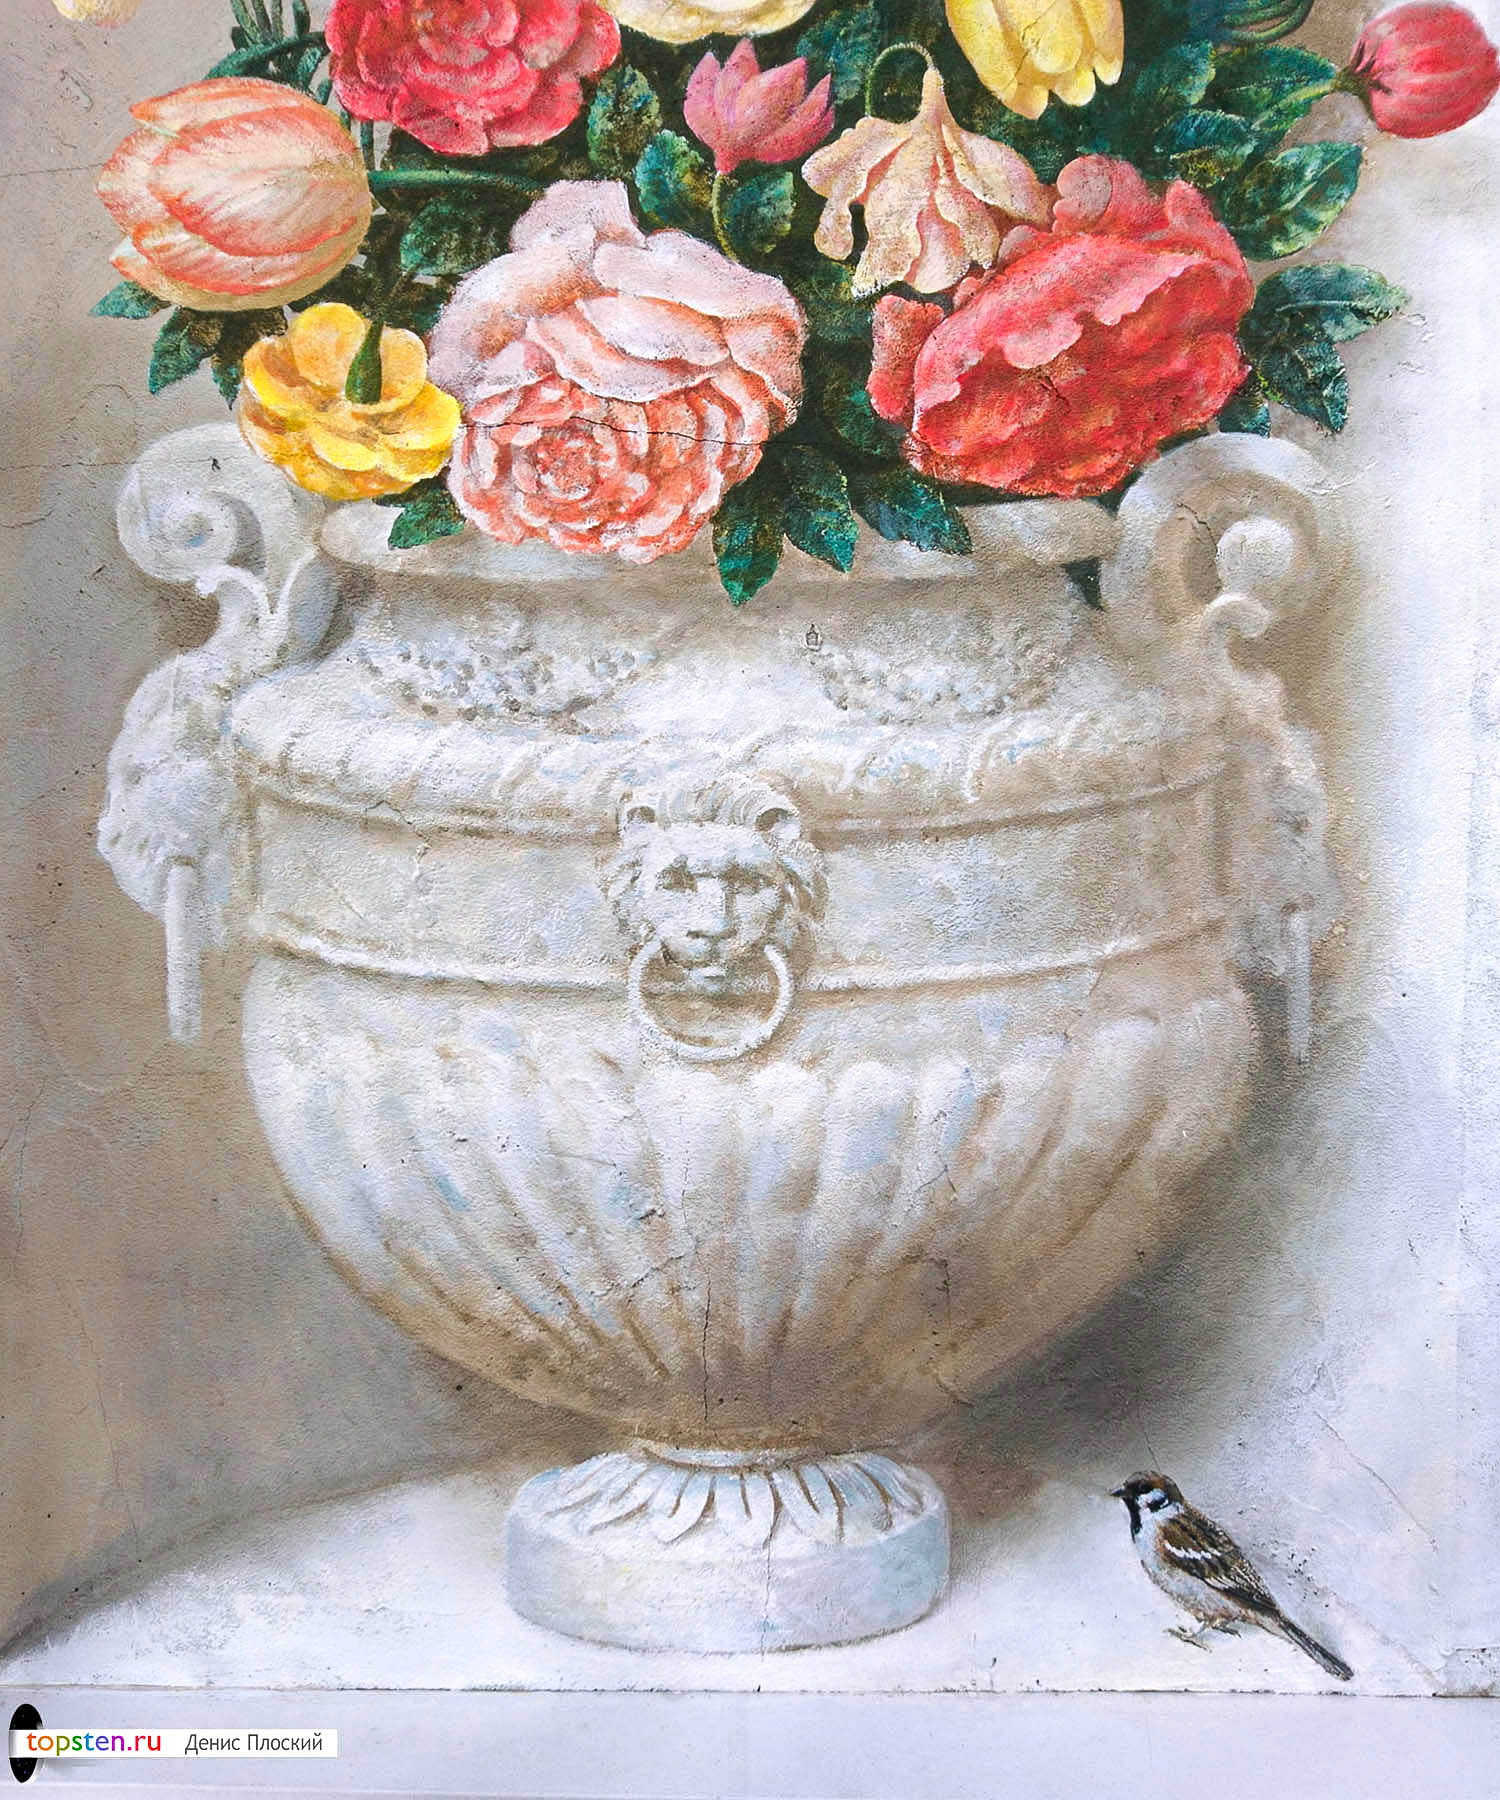 рисунок с цветами на стене - фрагмент с вазоном